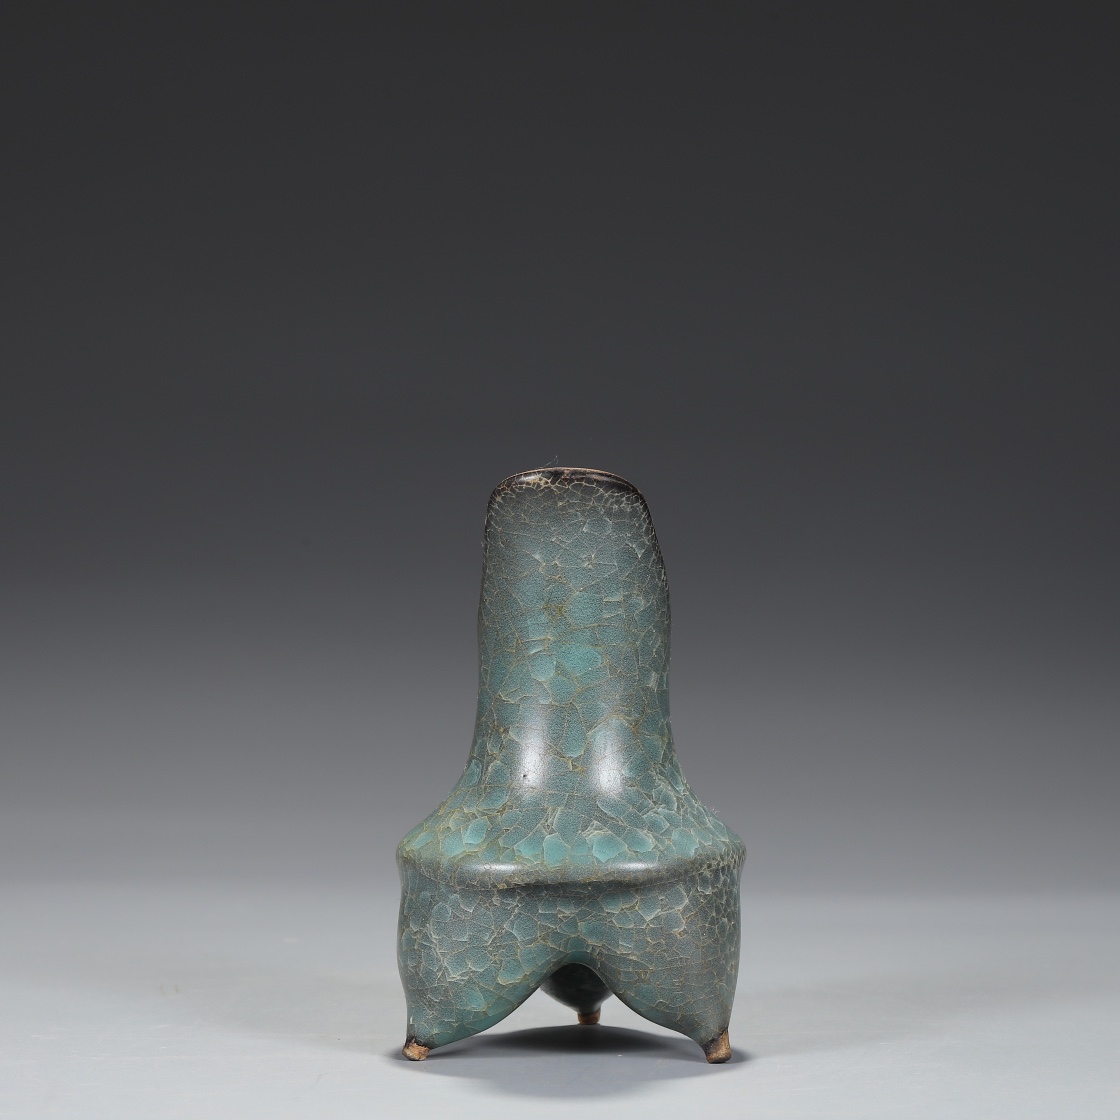 Southern Song Dynasty Xiunei Siguan kiln borneol pattern wine bottle - Image 8 of 9